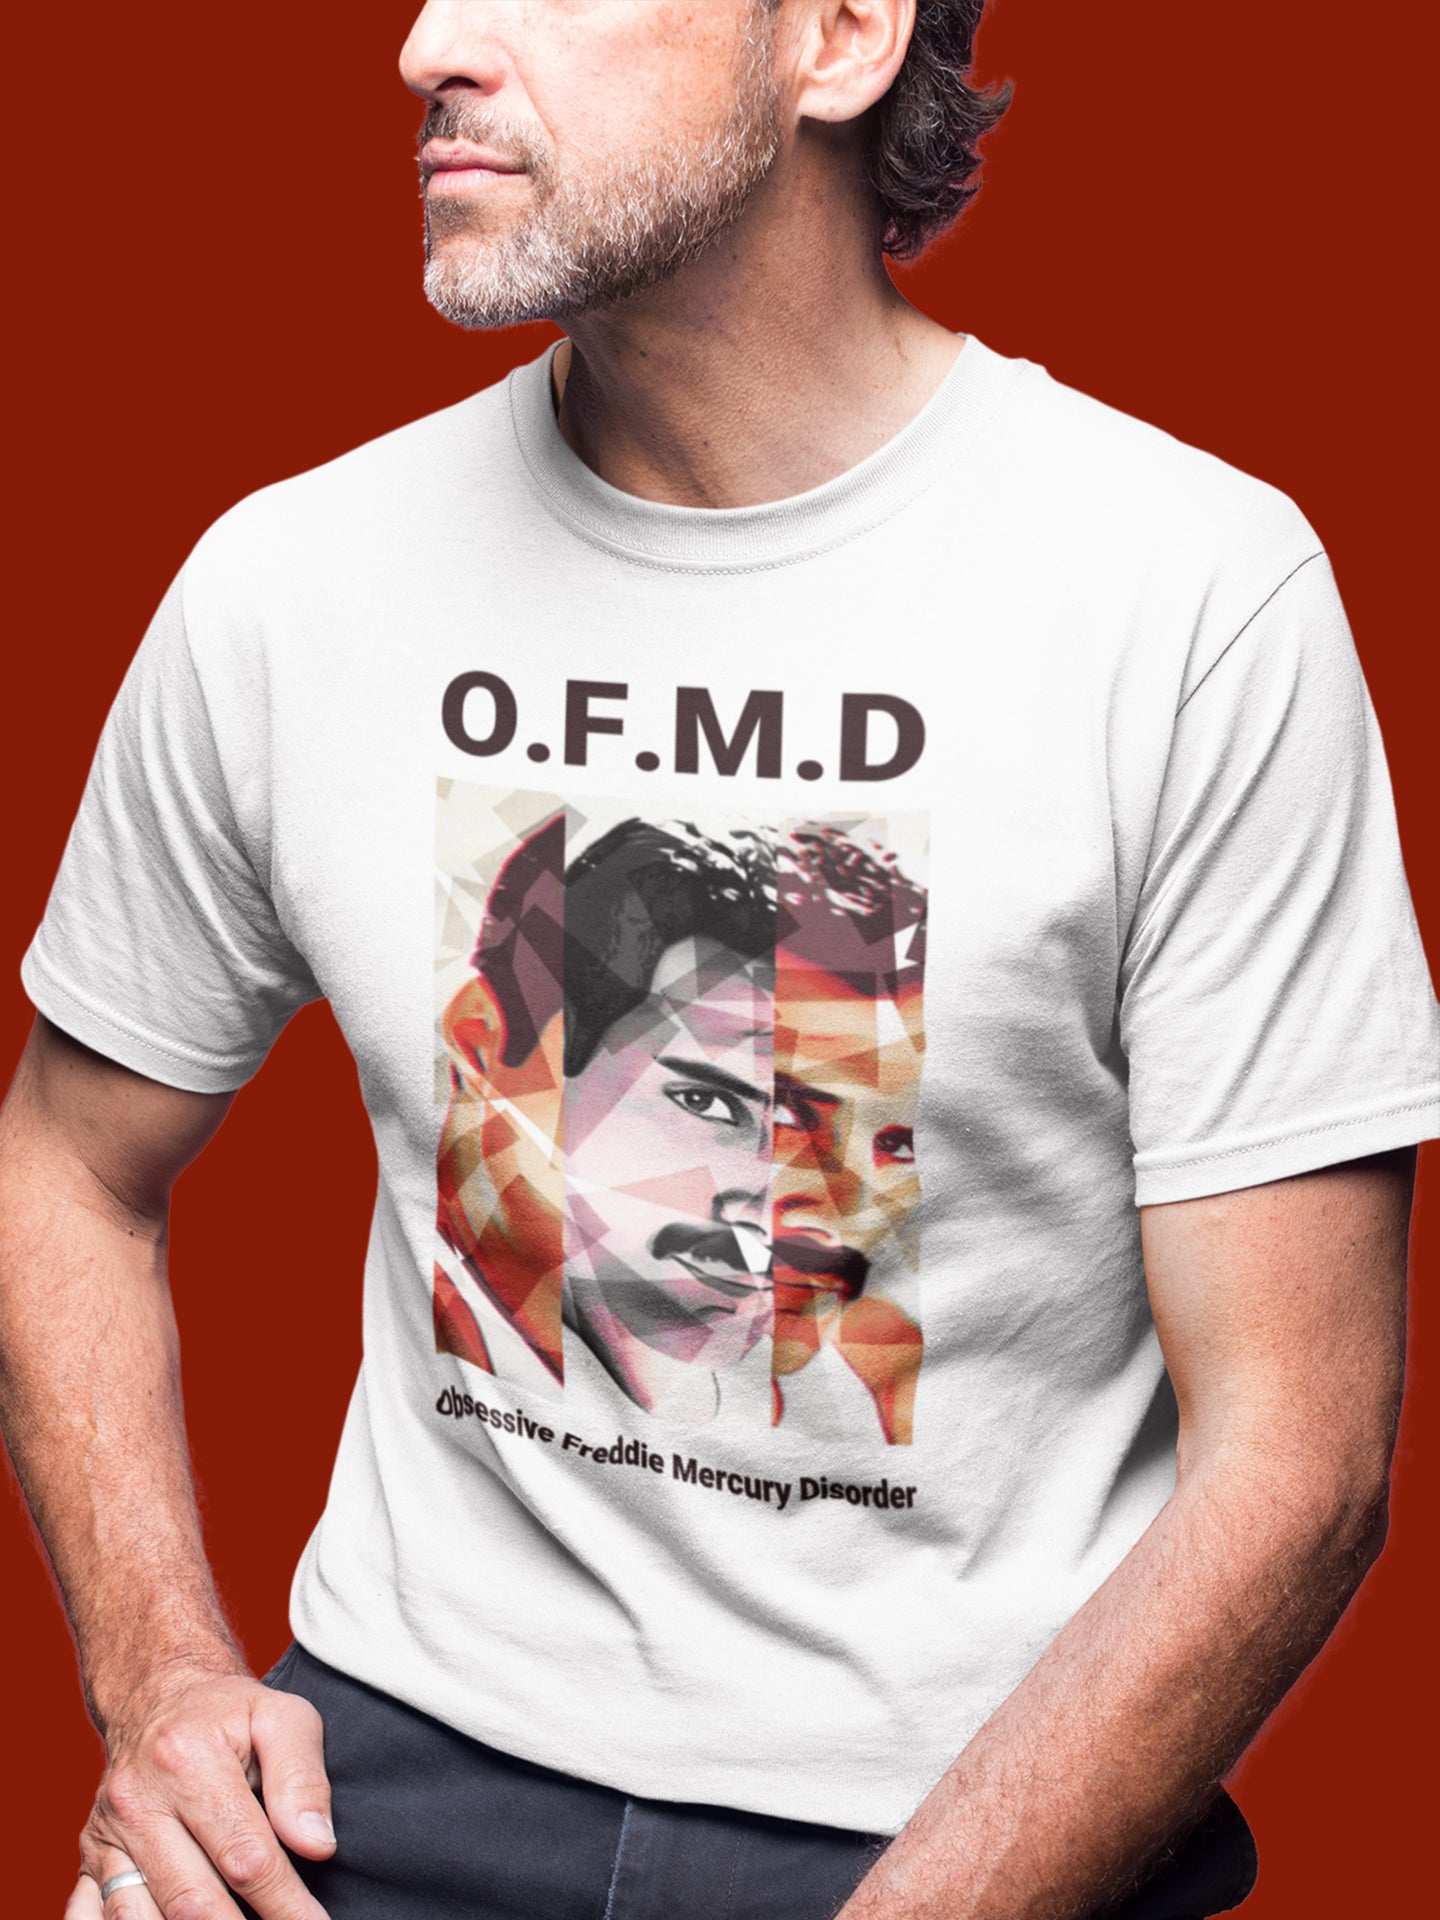 O.F.M.D T shirt